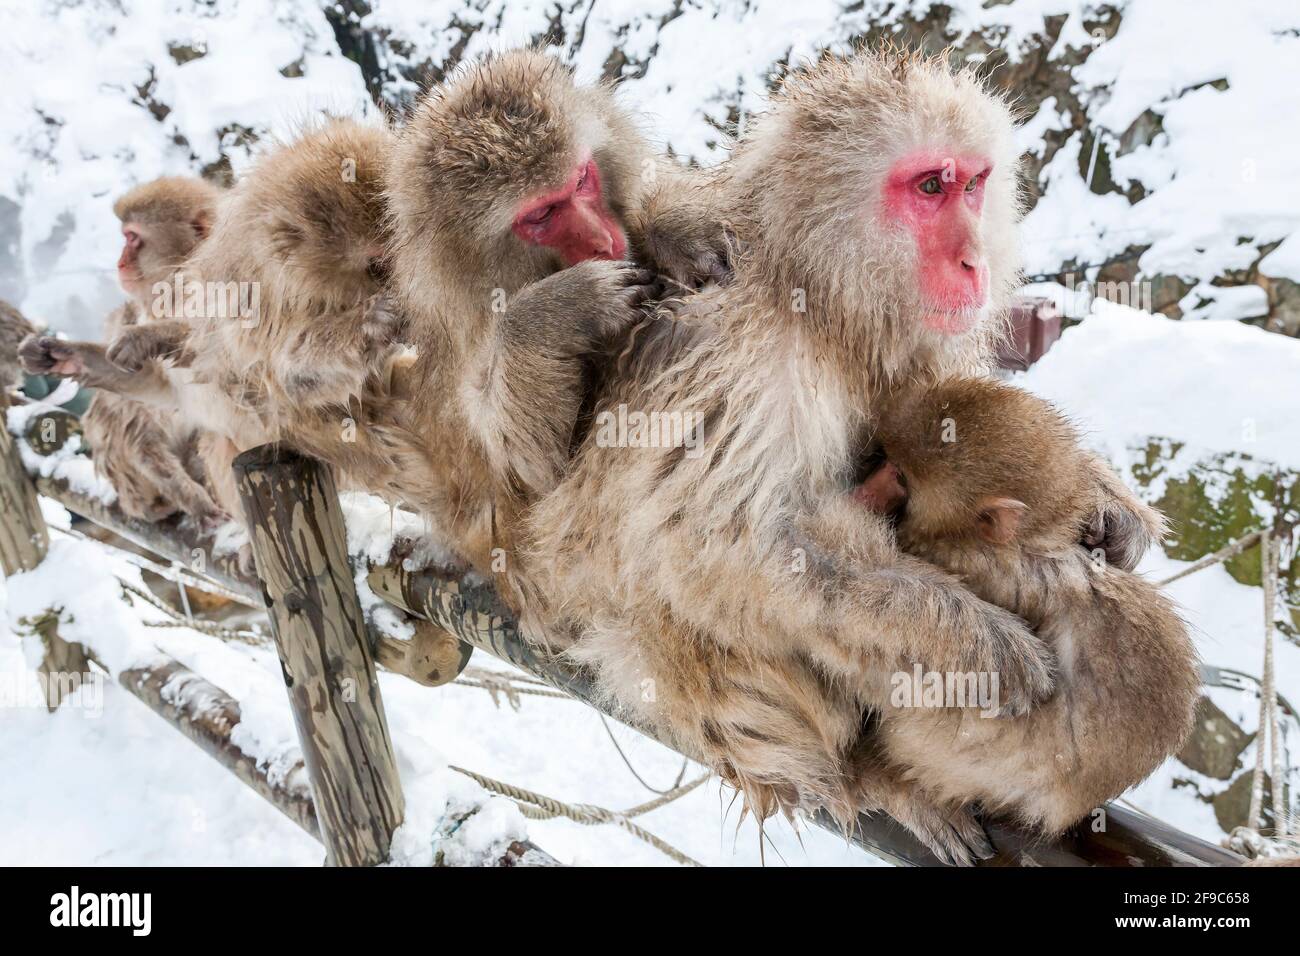 Group of Snow monkeys sitting on the fence, Yudanaka, Japan Stock Photo